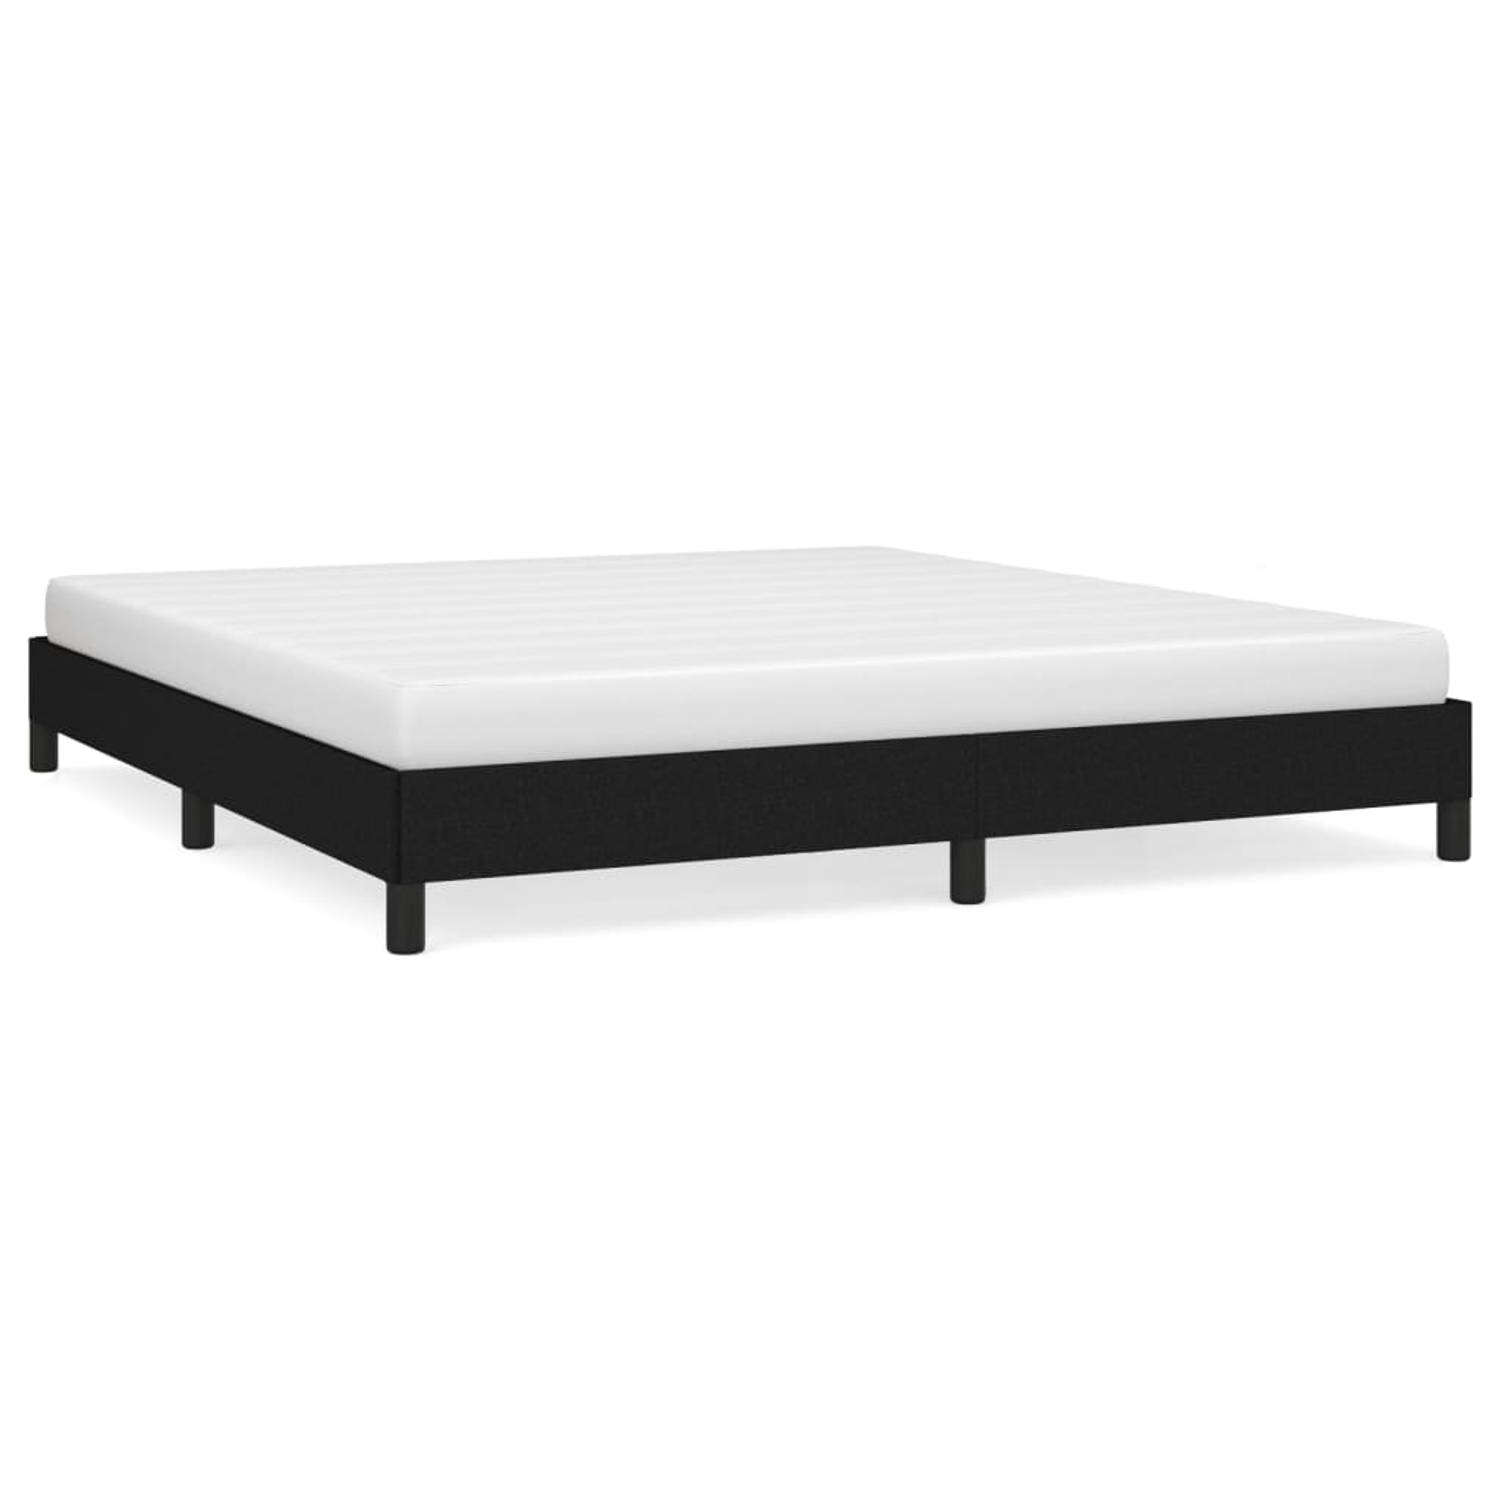 The Living Store Bedframe stof zwart 160x200 cm - Bedframe - Bedframe - Bed - Slaapmeubel - Ledikant - Bedbodem - Tweepersoonsbed - Bedden - Slaapmeubels - Slaapmeubelen - Ledikant